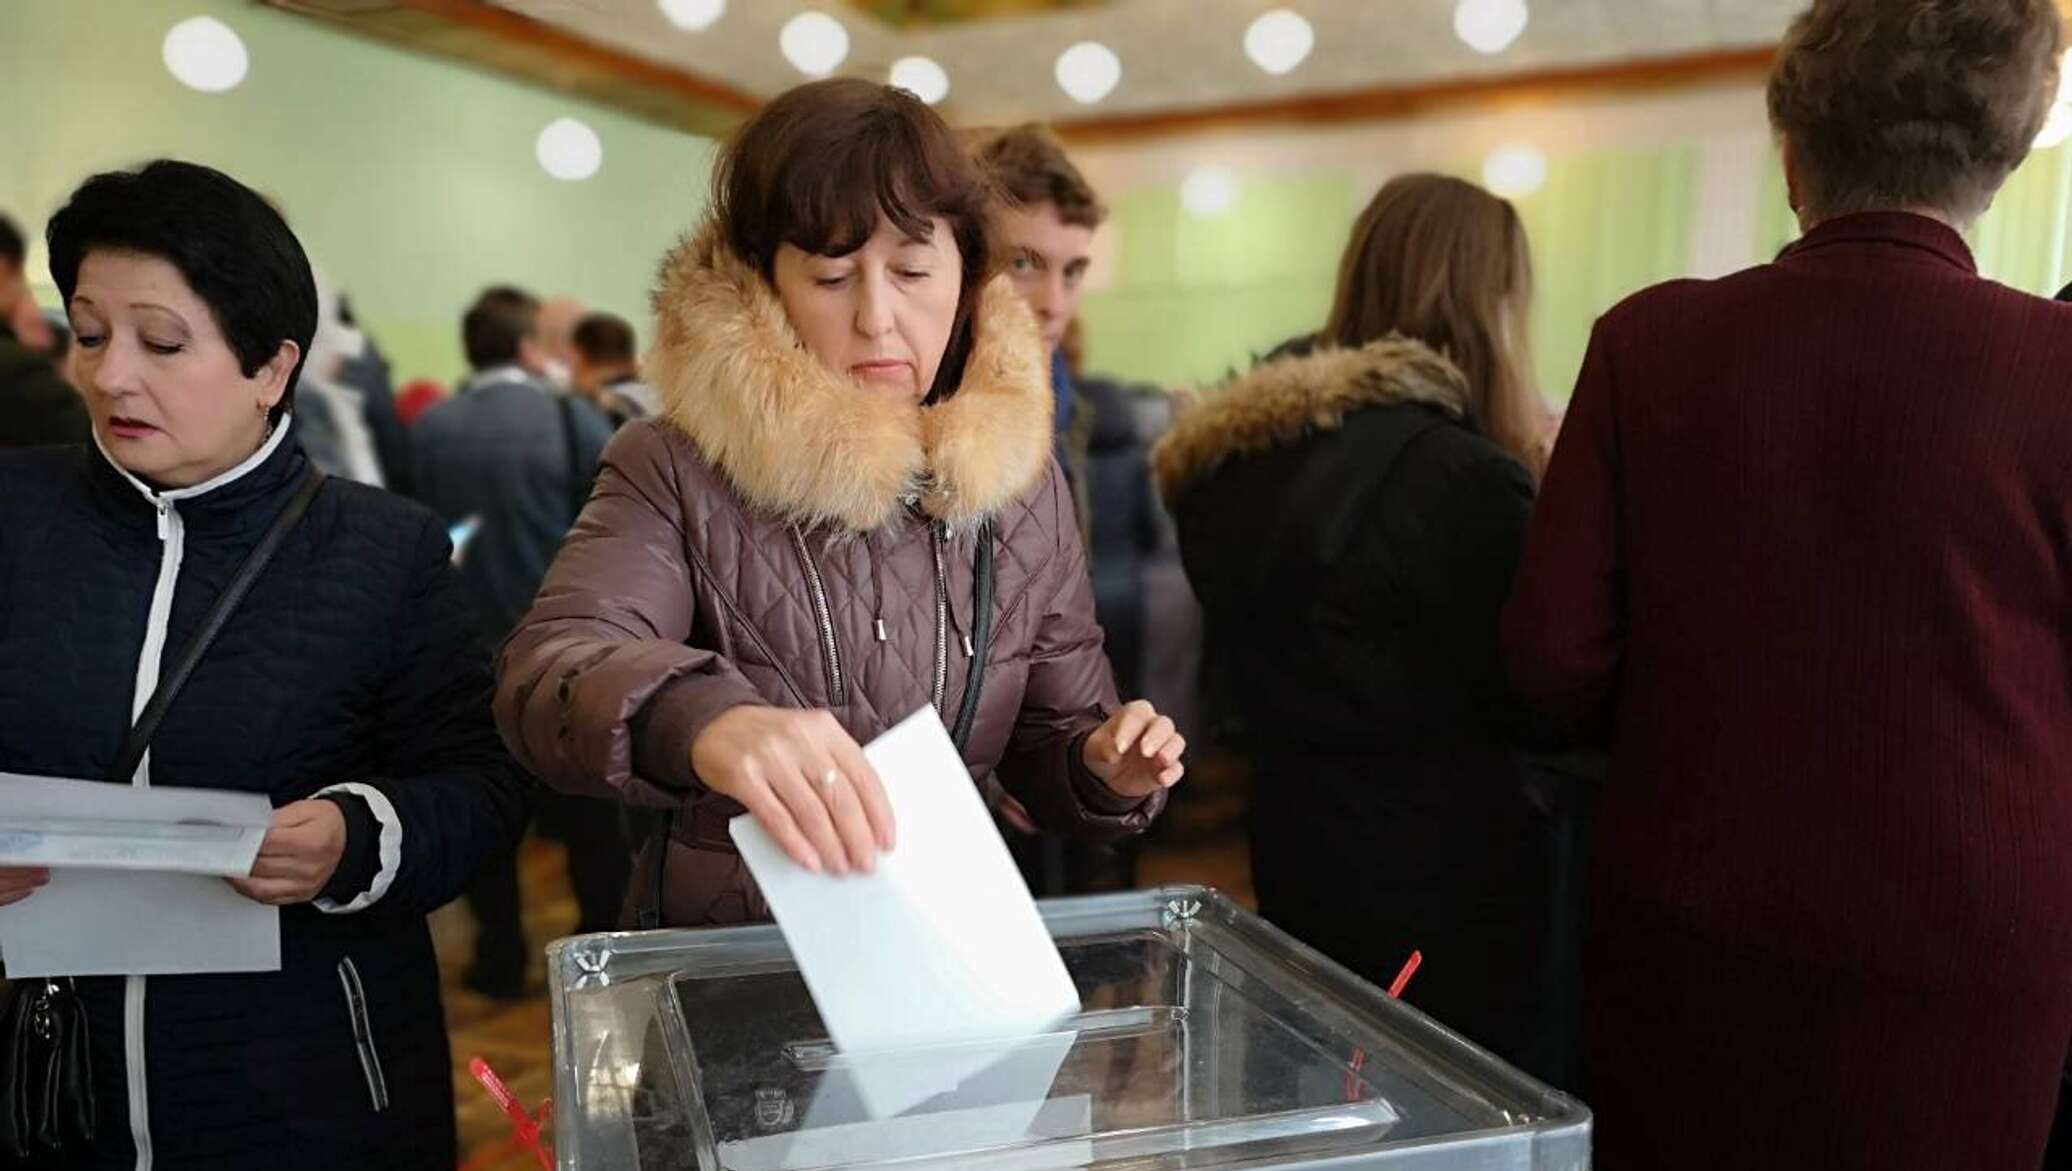 Явка на выборы президента 2018 Крым. ЛНР выборы голосование. В назначенный день 21 февраля избирательный